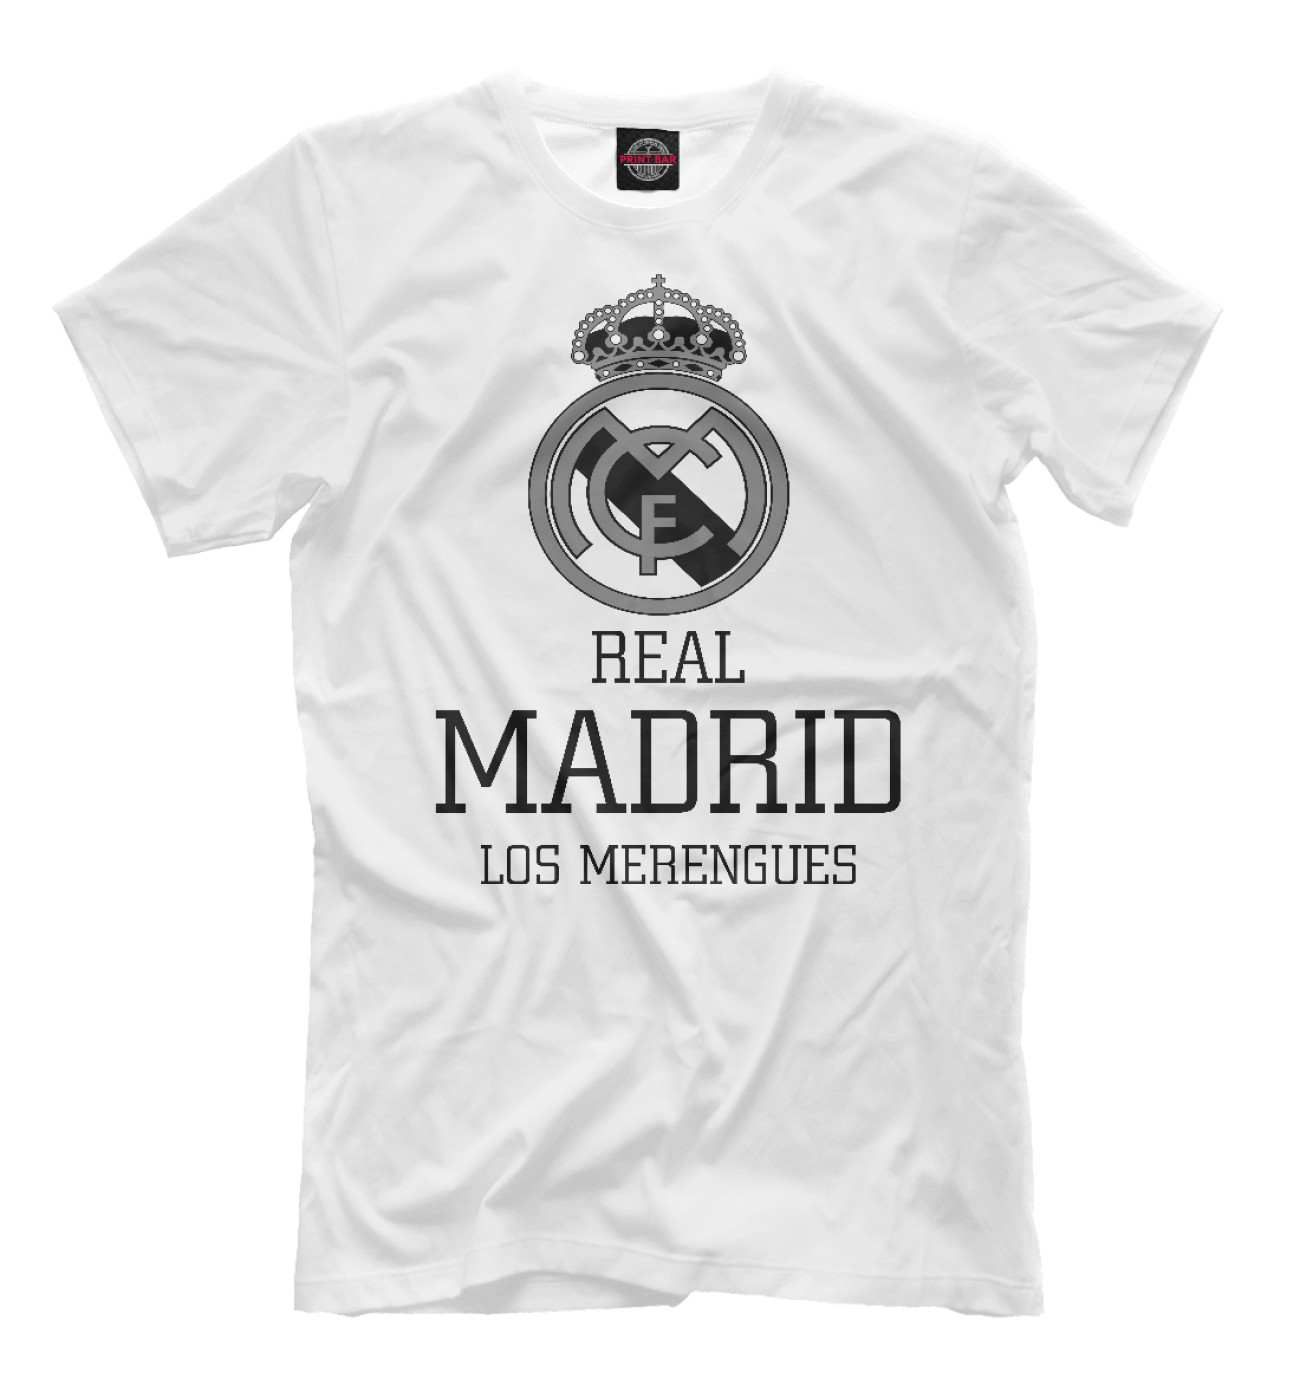 Real madrid купить футболку. Футболка Реал. Футболка Мадрид. Майка Реал Мадрид. Логотип Реал Мадрид на футболке.